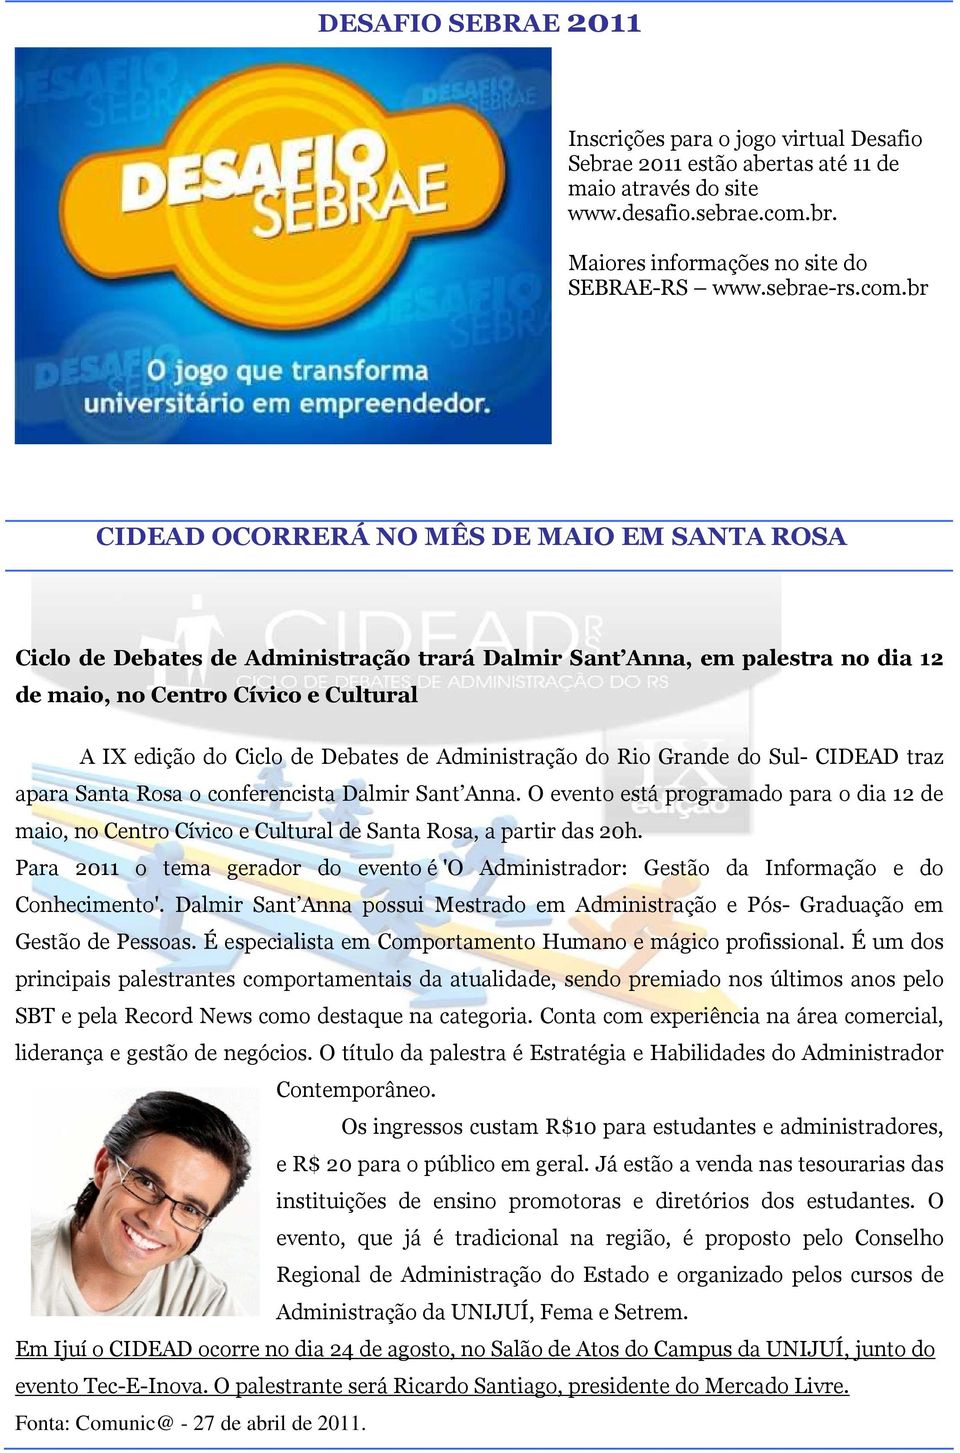 Debates de Administração do Rio Grande do Sul- CIDEAD traz apara Santa Rosa o conferencista Dalmir Sant Anna.